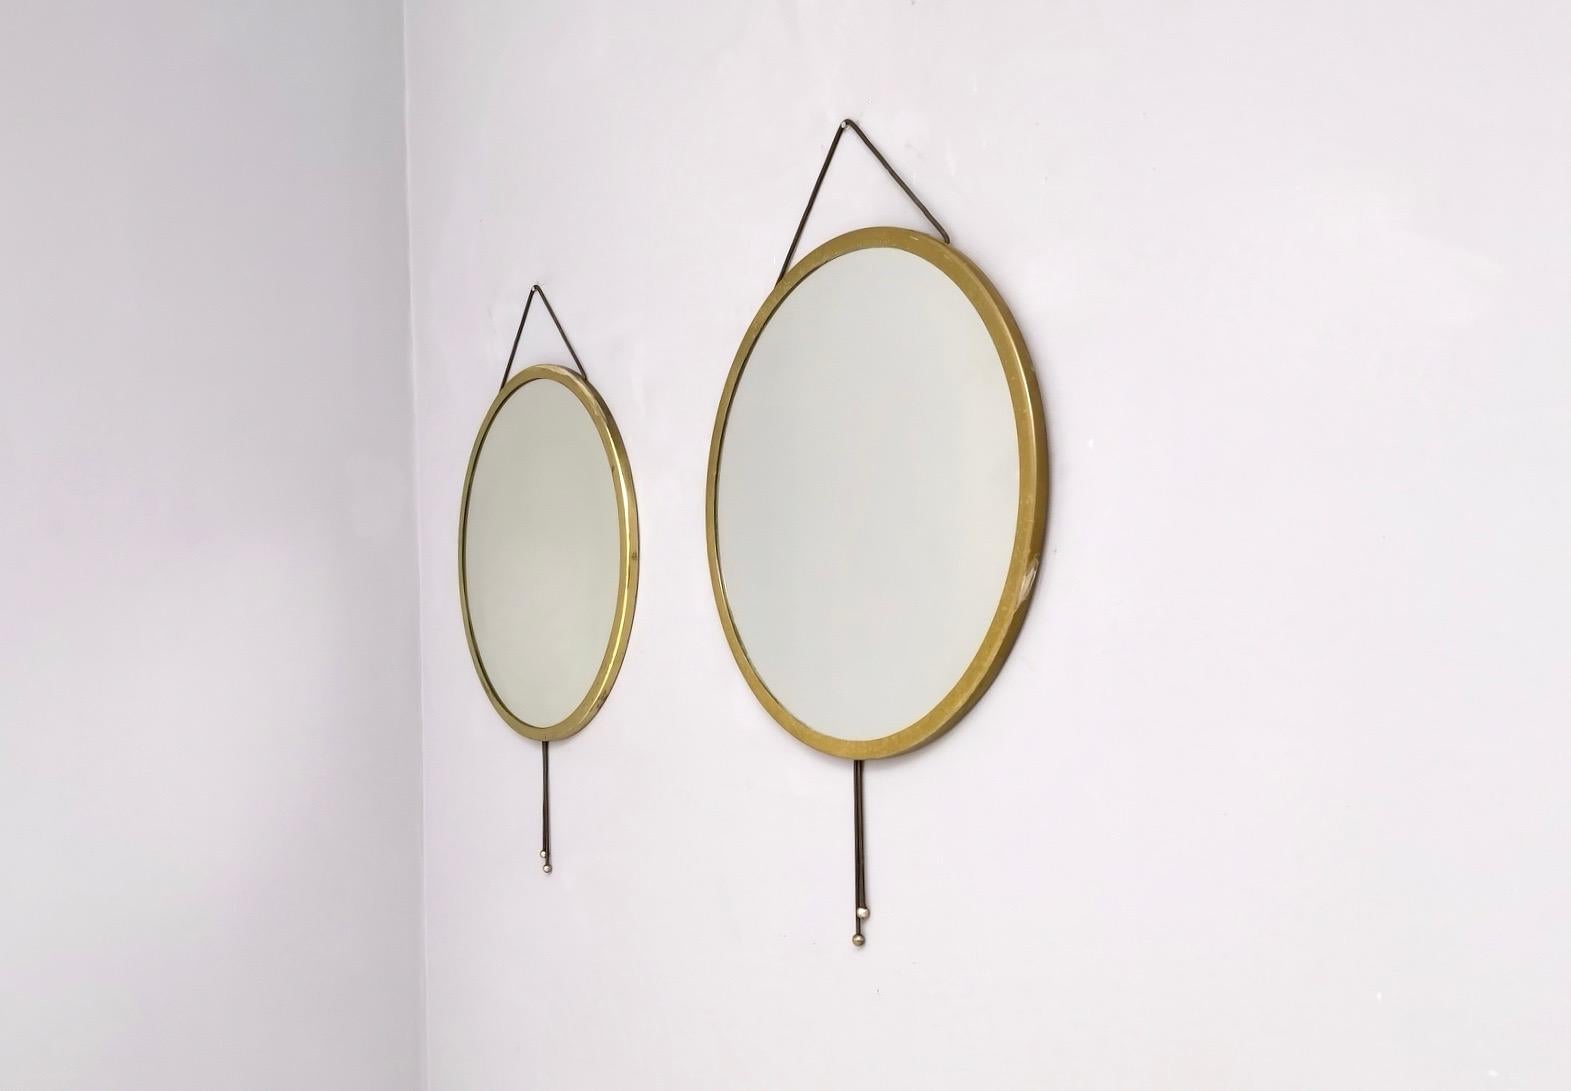 Italian Pair of “Vipera” Wall Mirrors by Corrado Corradi dell' Acqua, Italy, circa 1960s